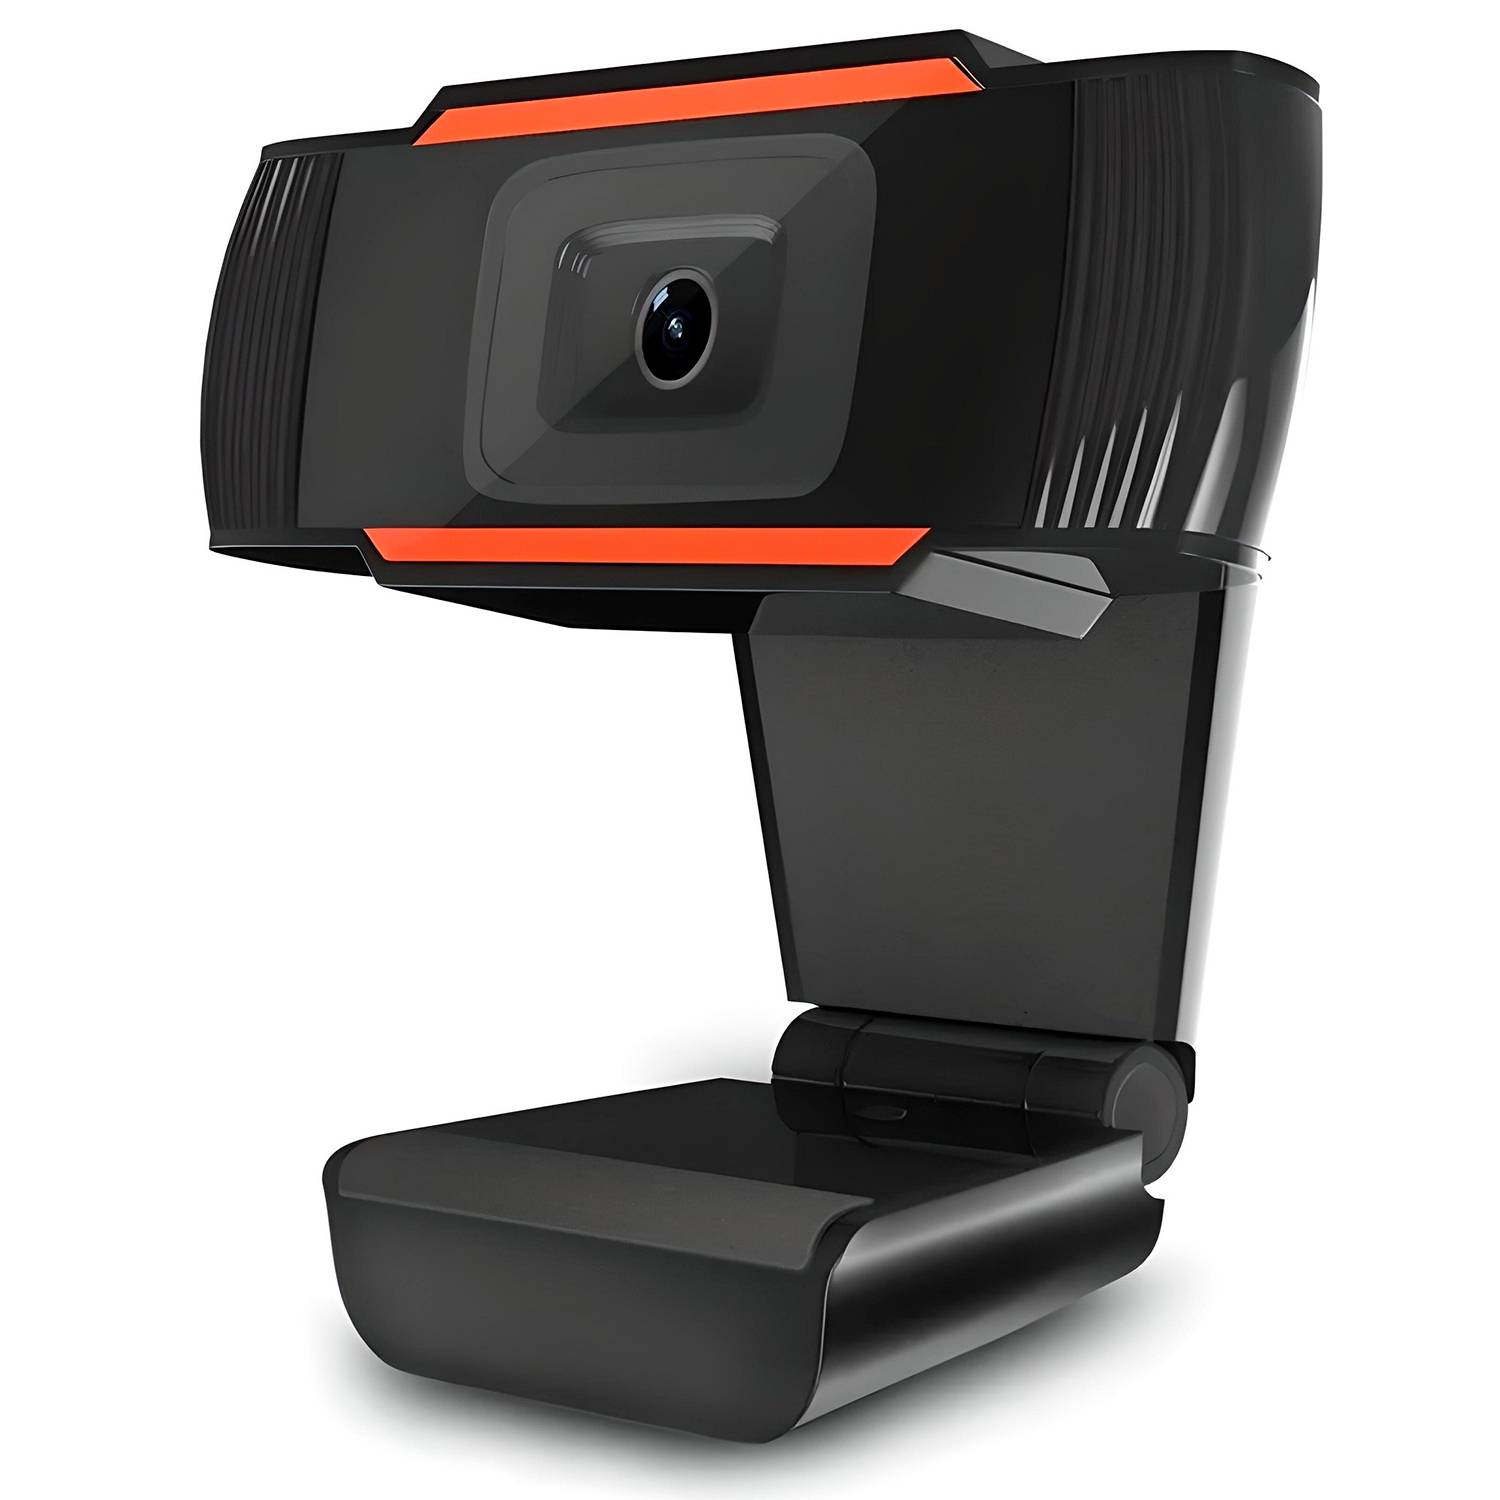 Cámara web 1080p mini cámara web para PC Cámaras web para